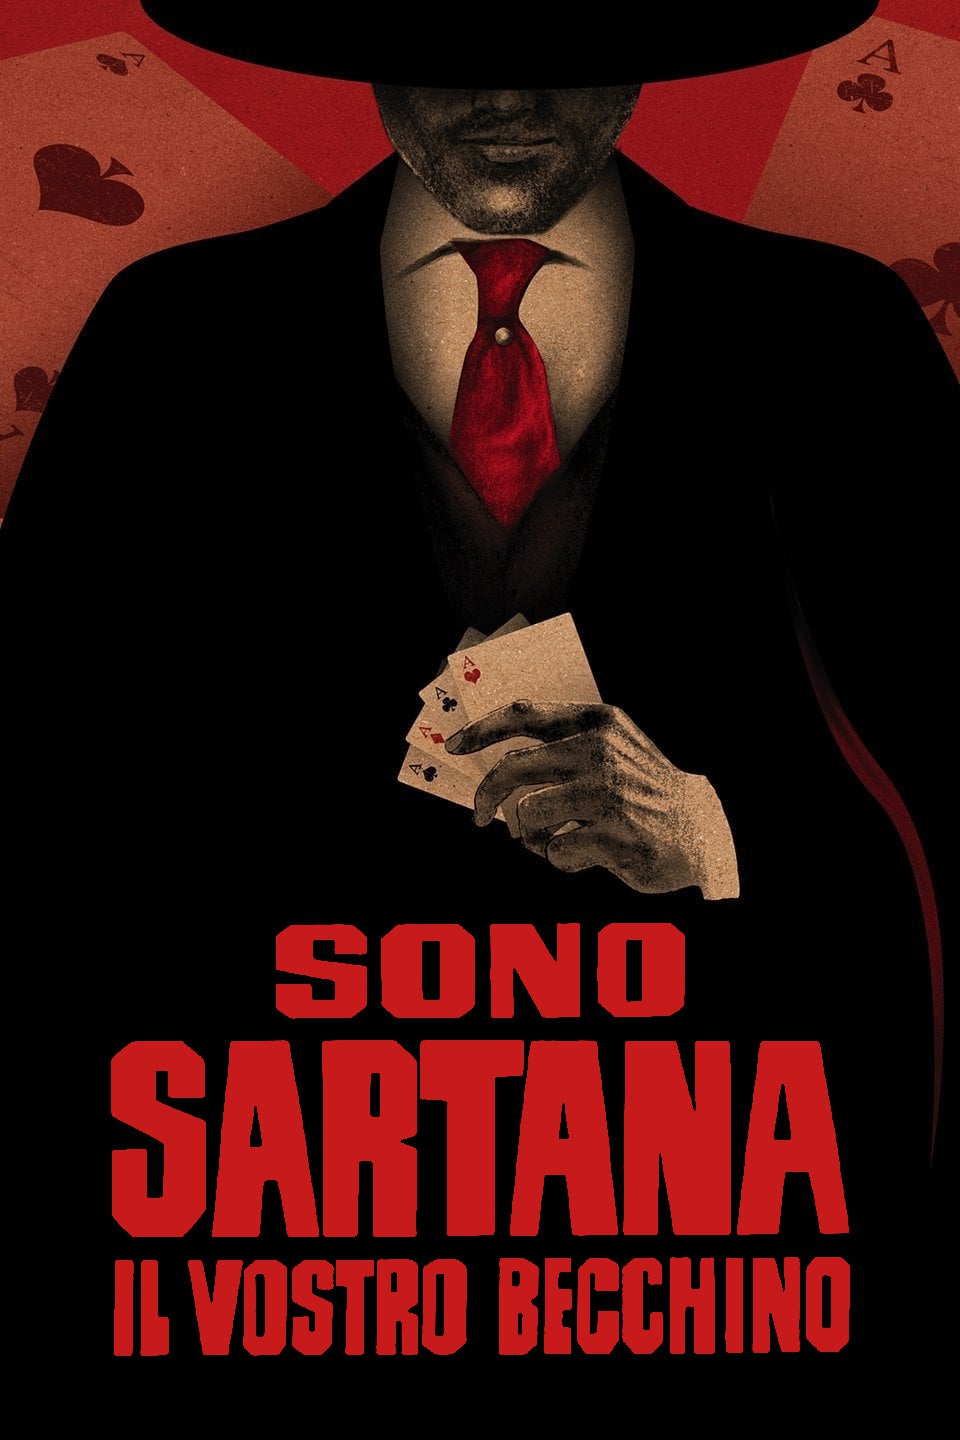 Sono Sartana, il vostro becchino [HD] (1969)